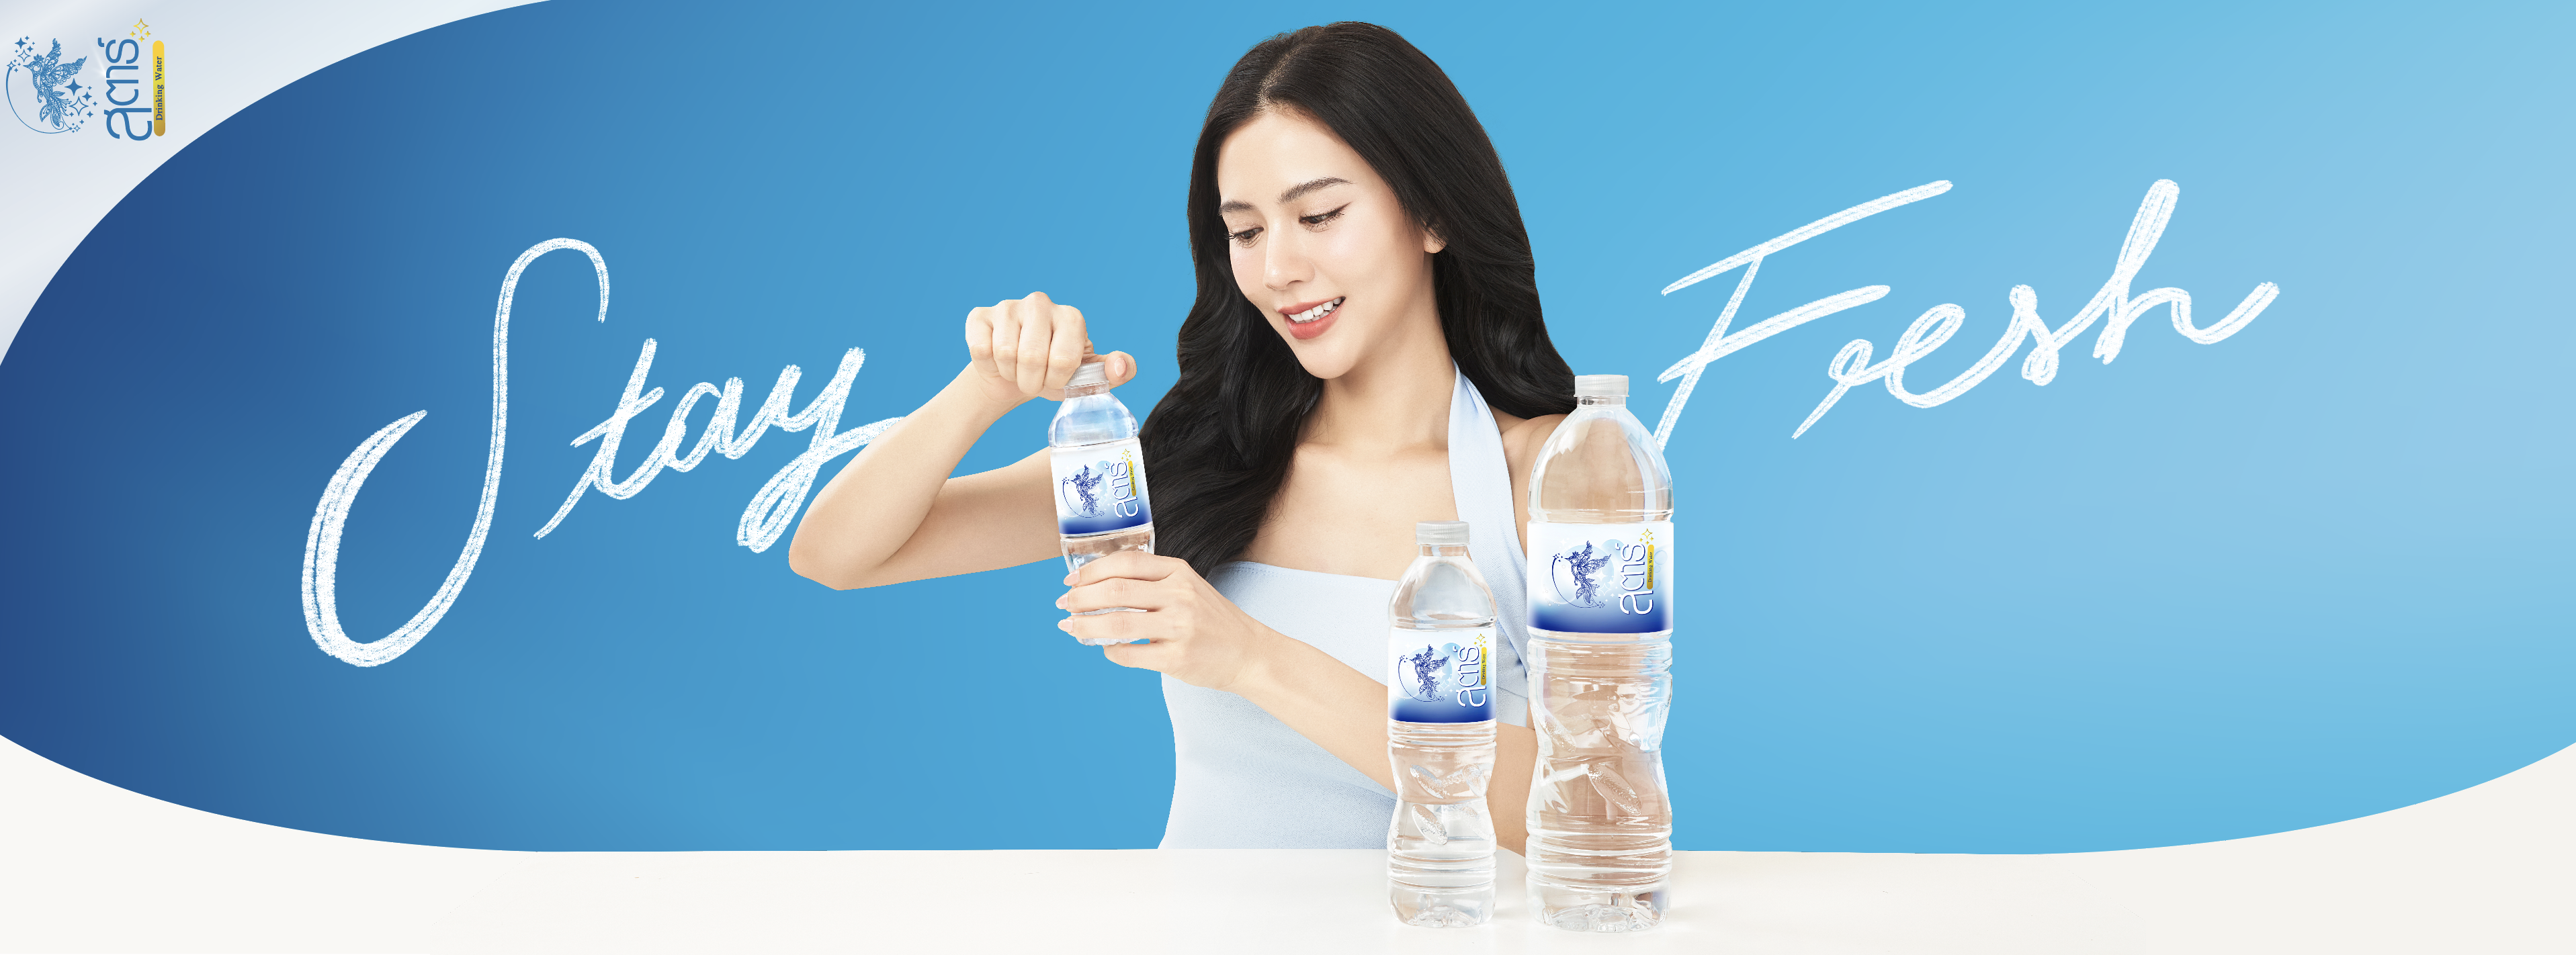 stardrinkingwater-water-น้ำดื่มสตาร์-drinkingwater-2